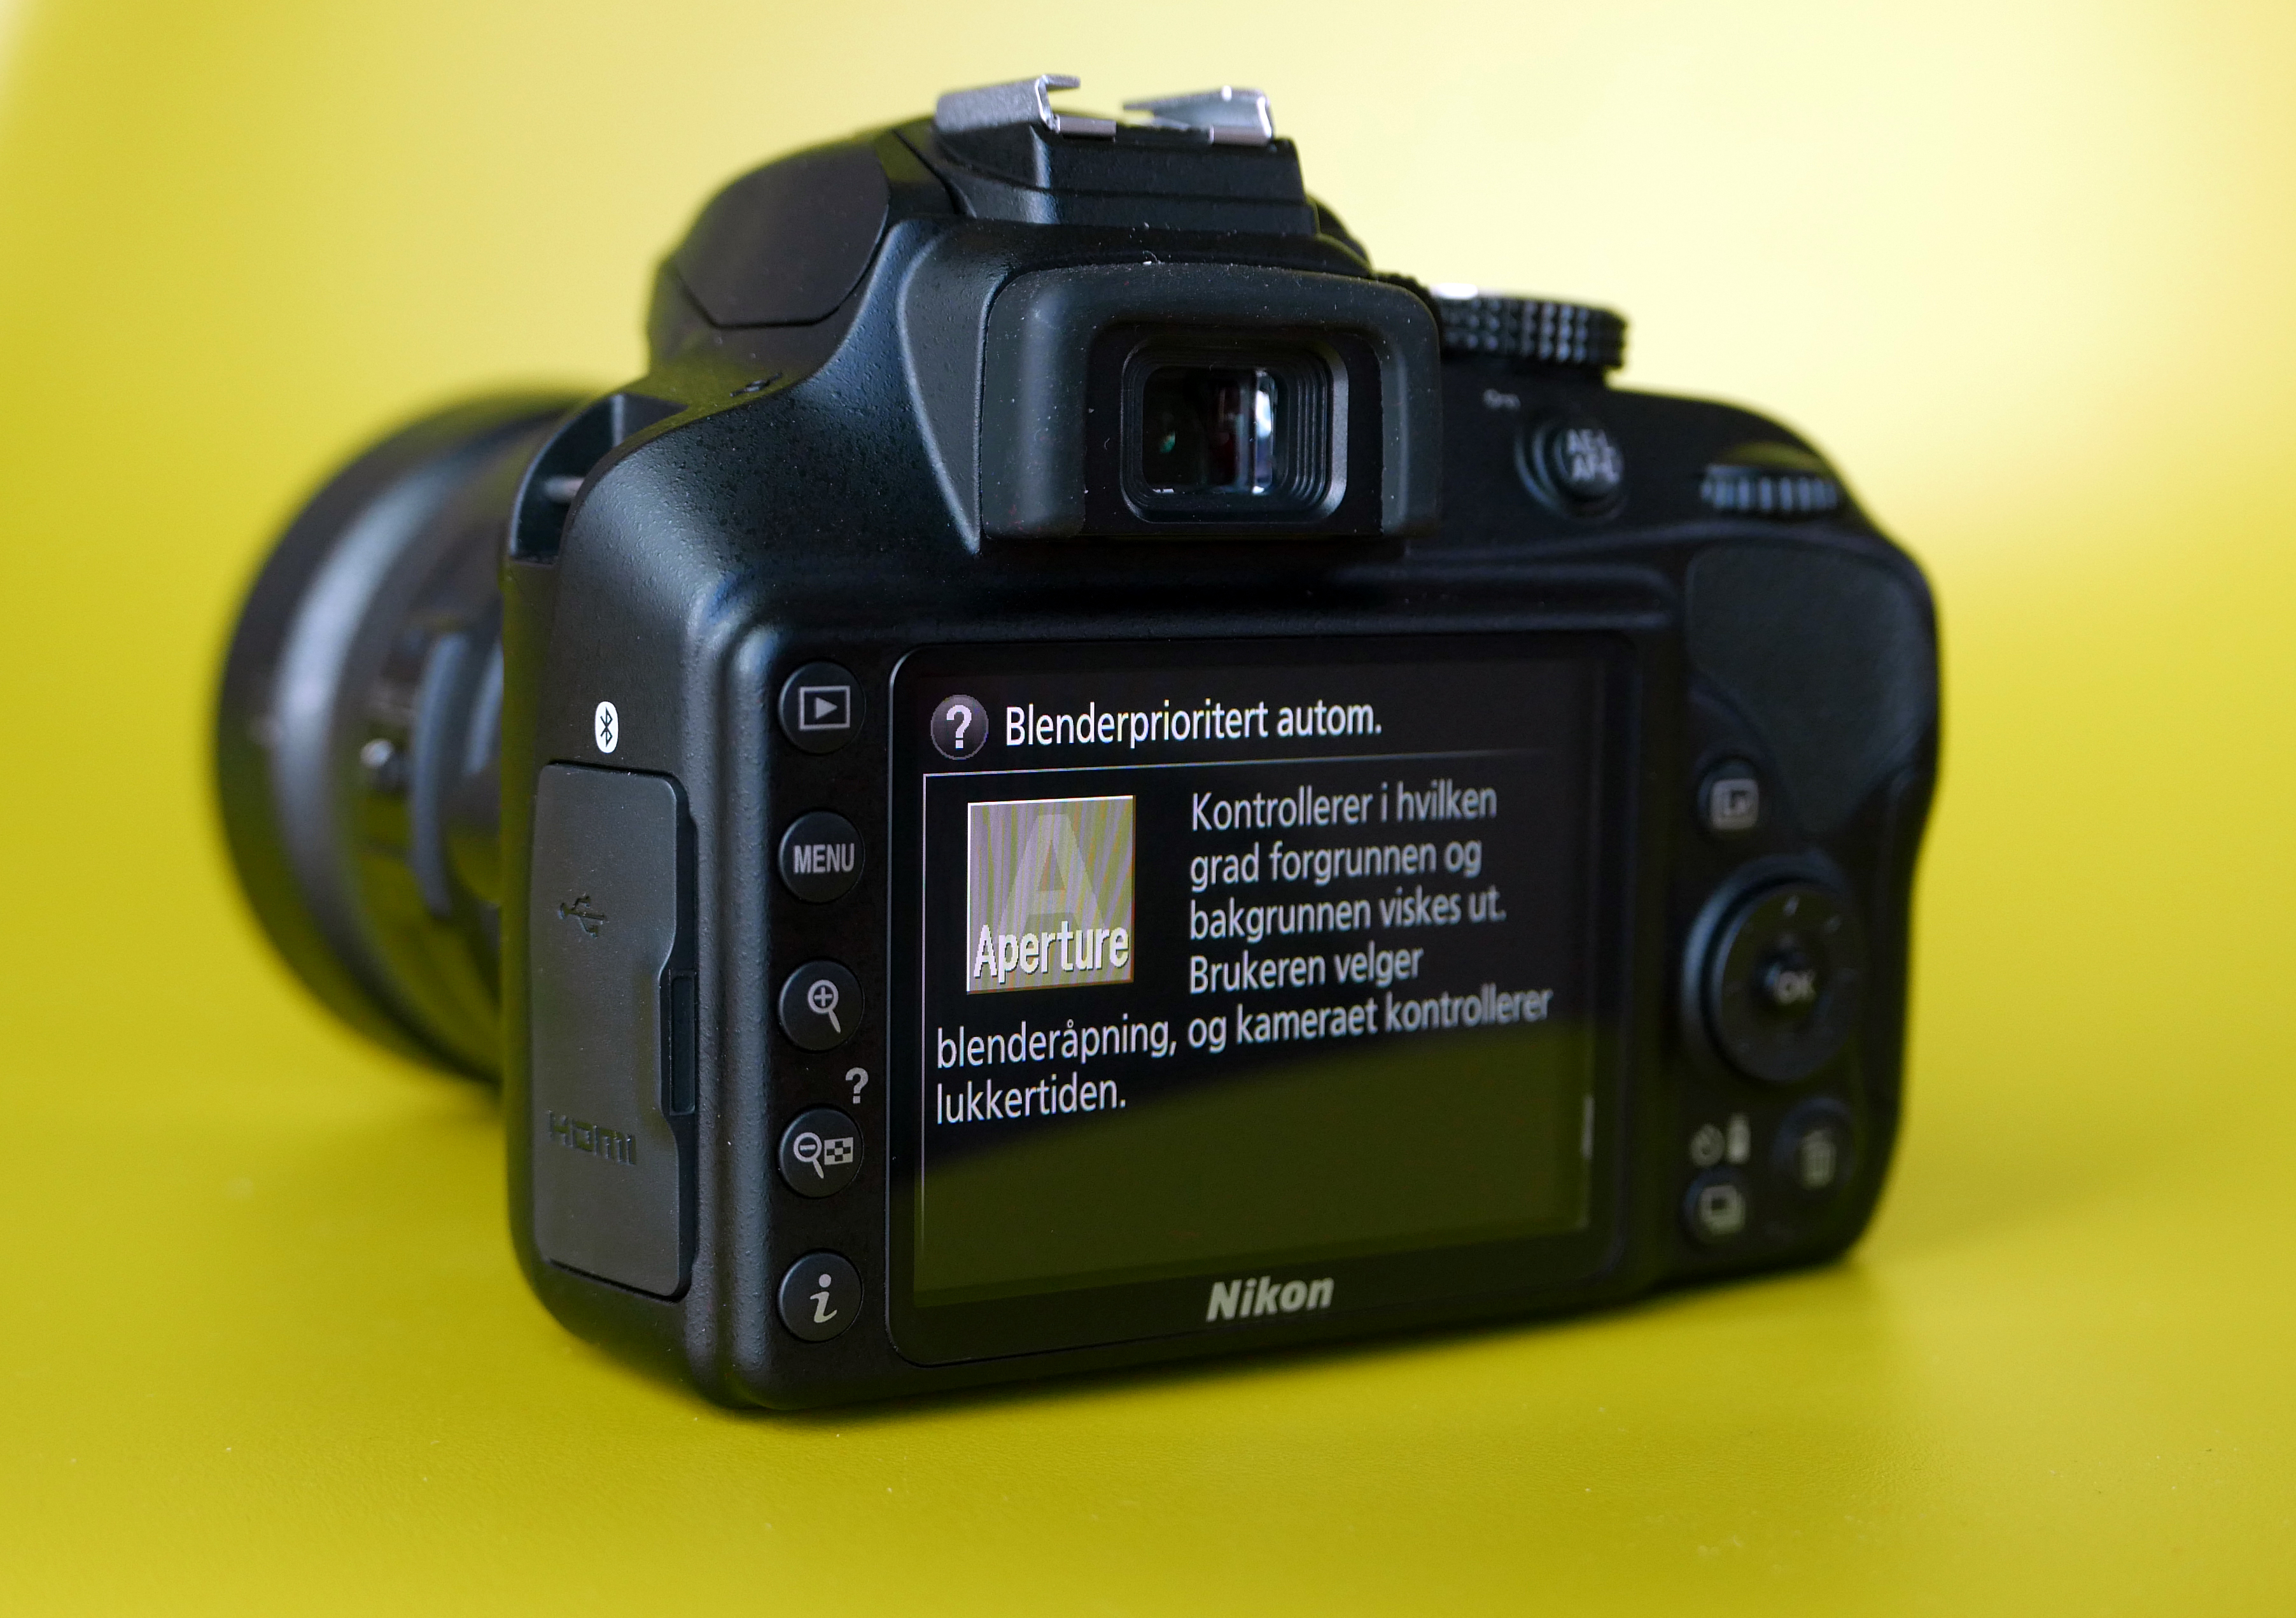 (Foto: Lasse Svendsen) En av fordelene med Nikon-kameraet, er hvor enkelt det er å lære å få finere bilder med det.